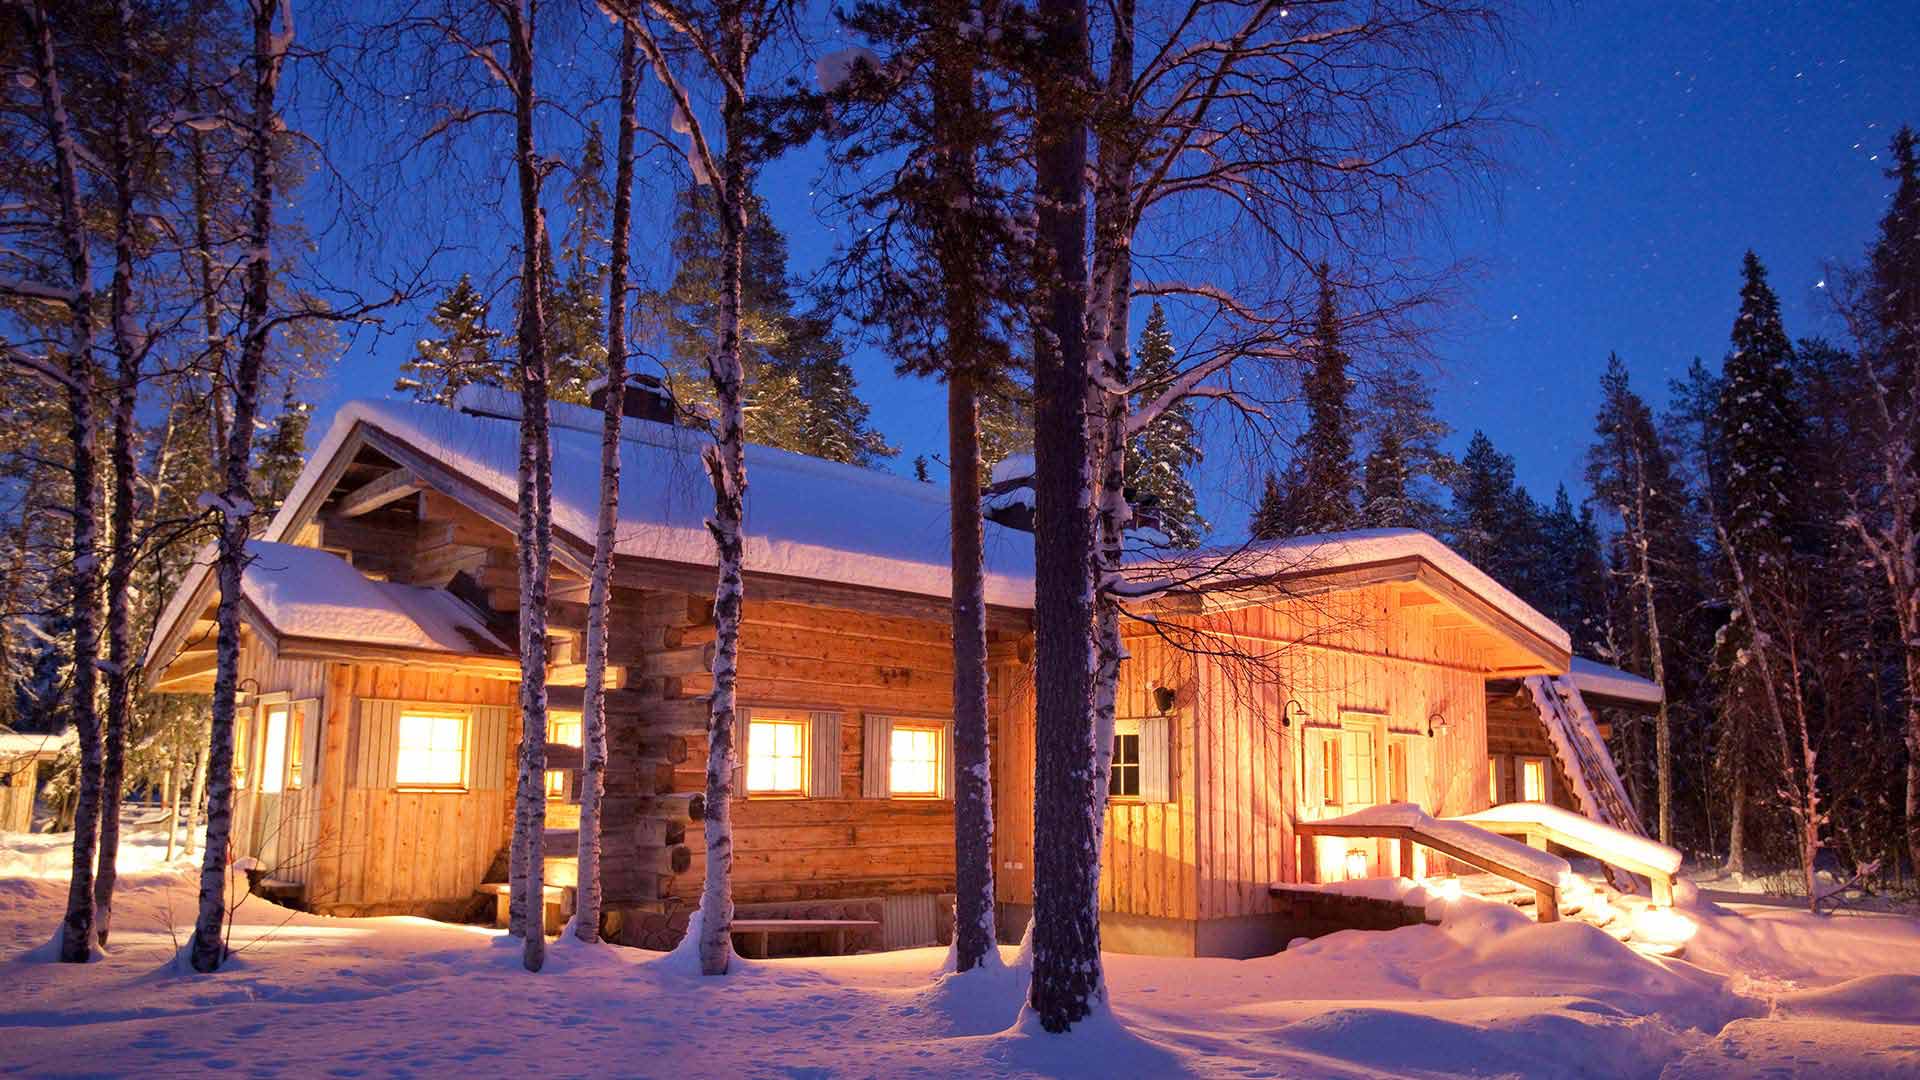 Vaattunki Lodge, Rovaniemi ©visitrovaniemi.fi